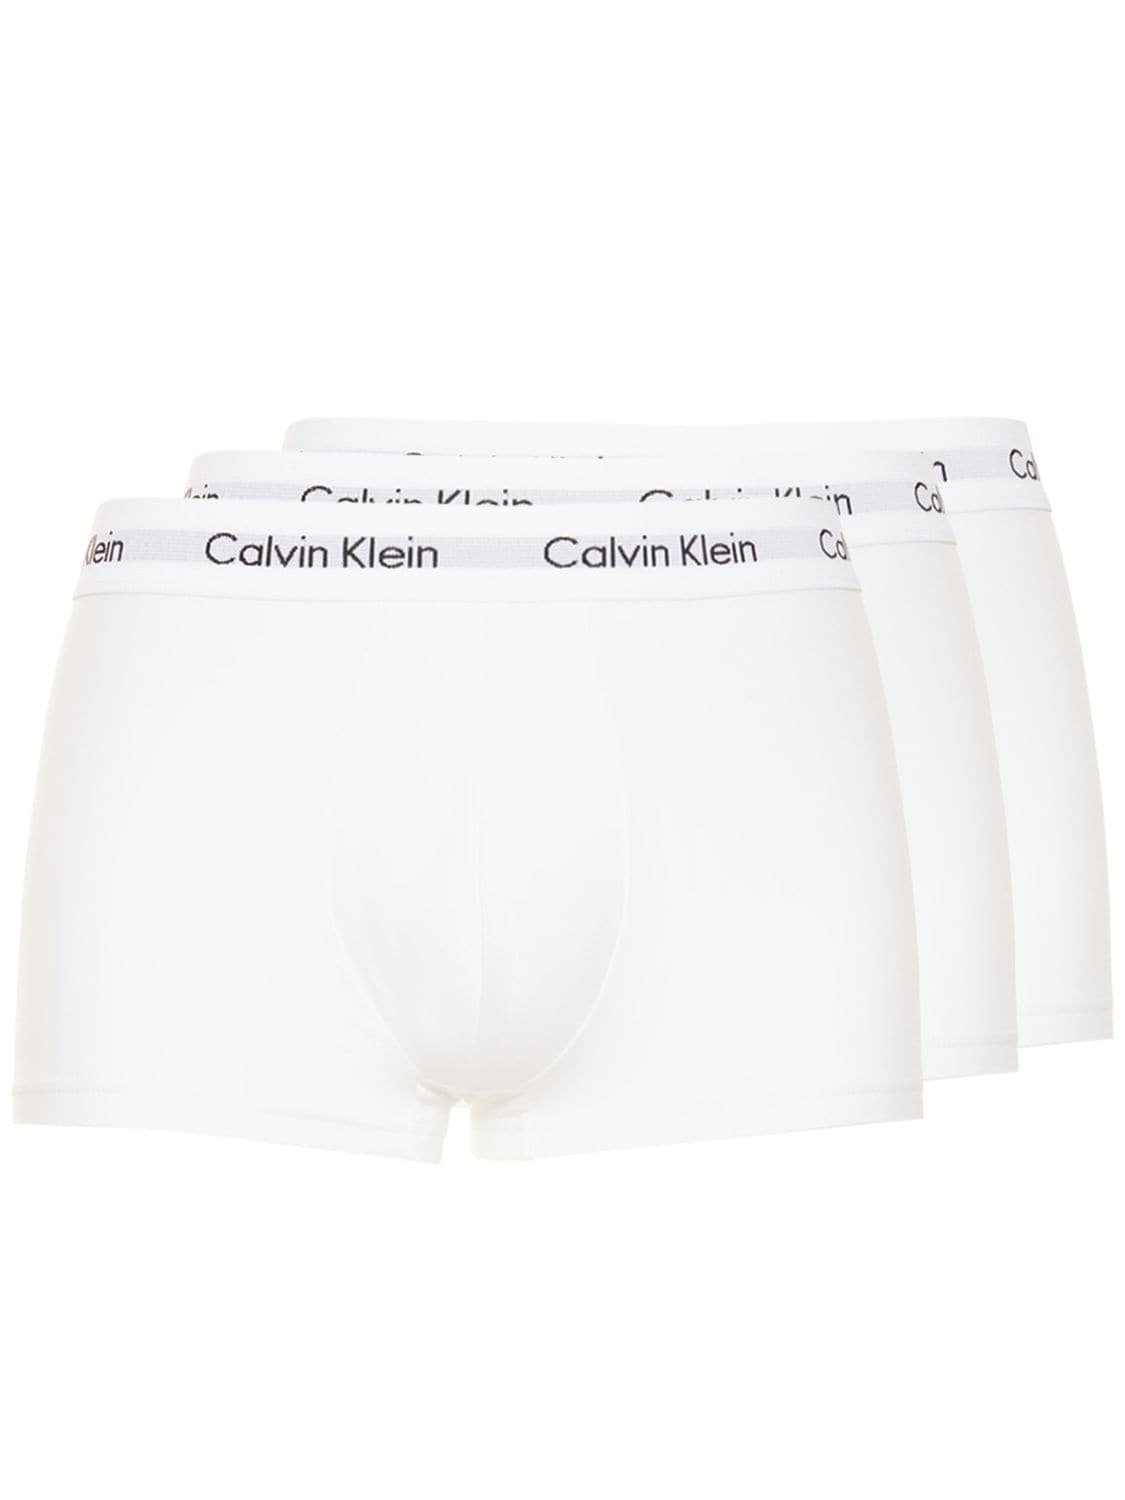 CALVIN KLEIN UNDERWEAR LOGO棉质低腰平角内裤3条套装